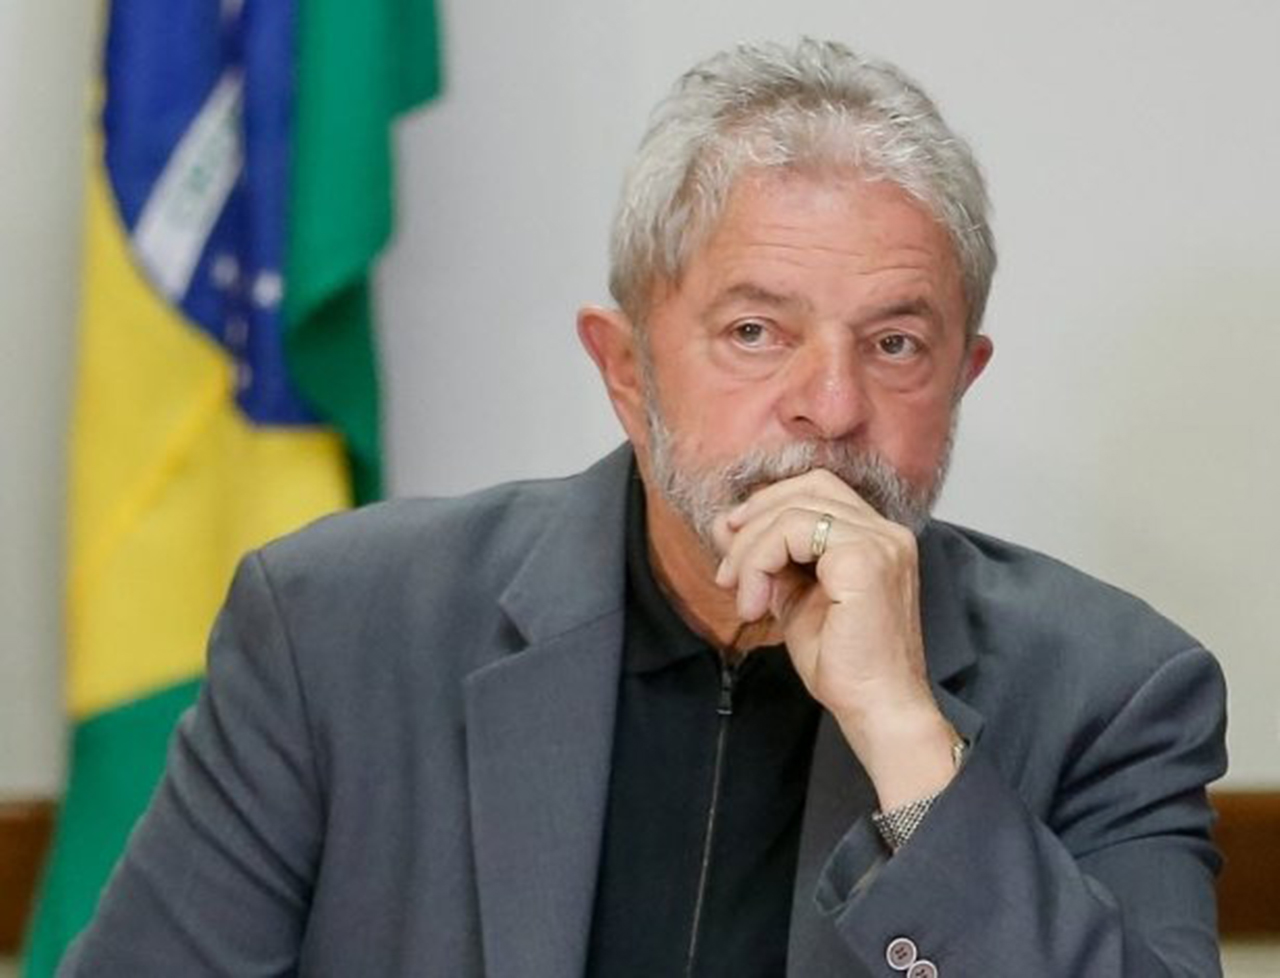 Lula no puede salir de Brasil y espera decisiones que le libren de la cárcel